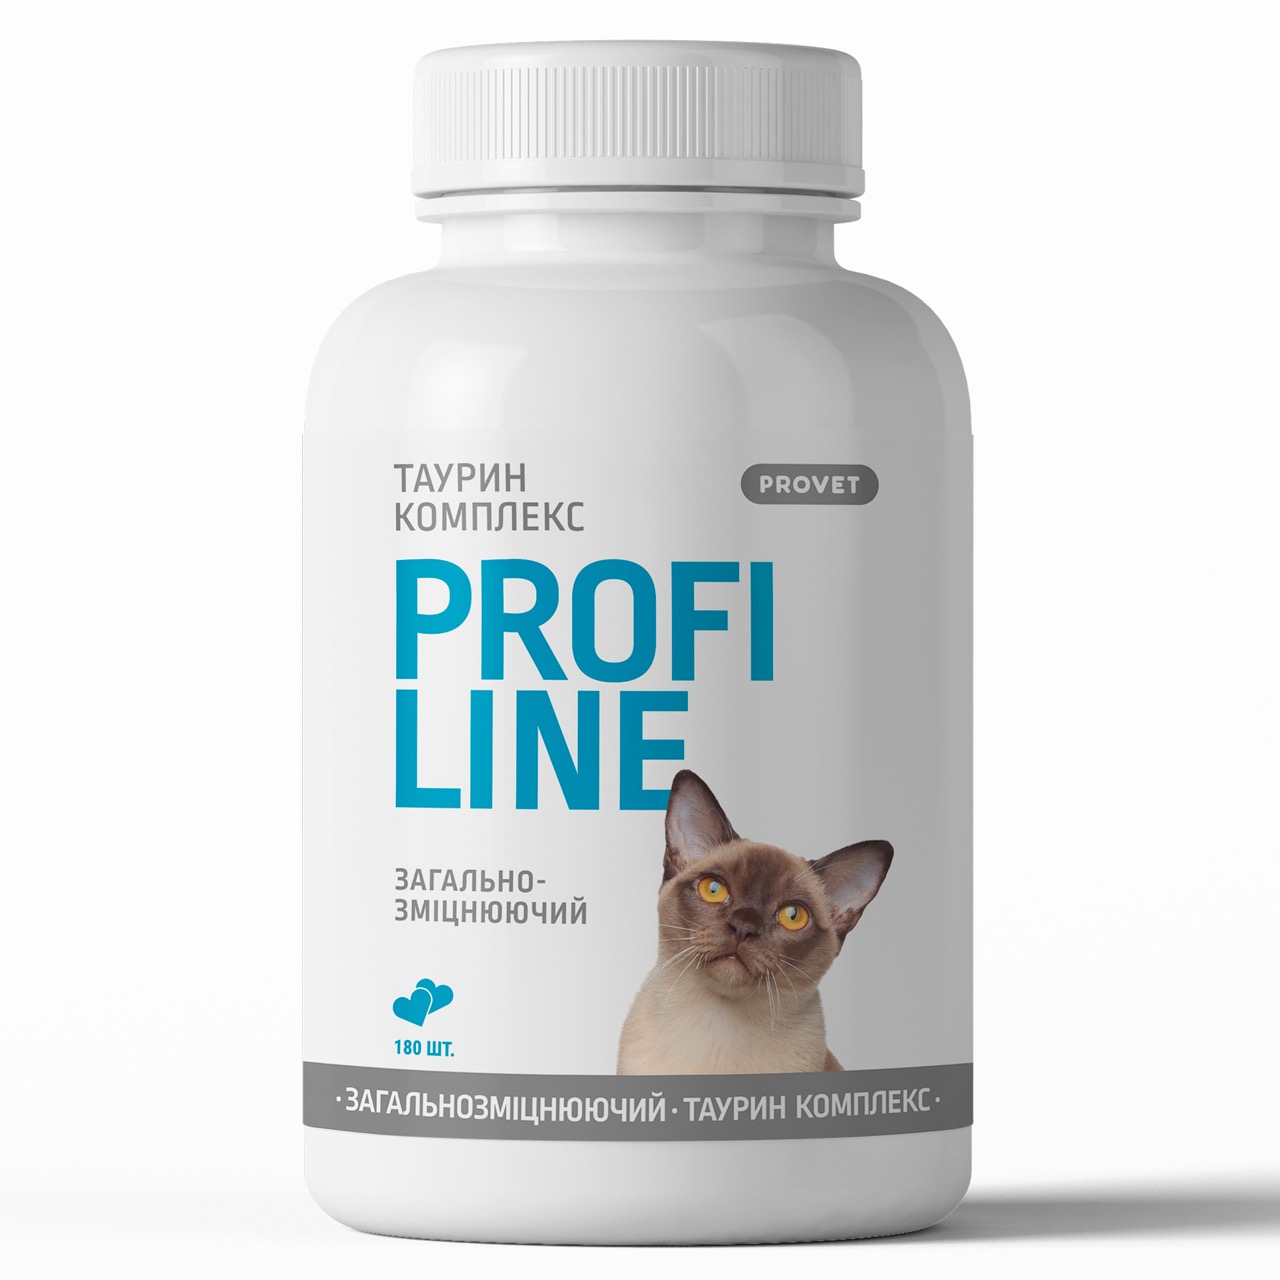 Фото - Прочие зоотовары ProVET Вітаміни  Профілайн Таурін для кішок із загальнозміцнюючою дією 180 